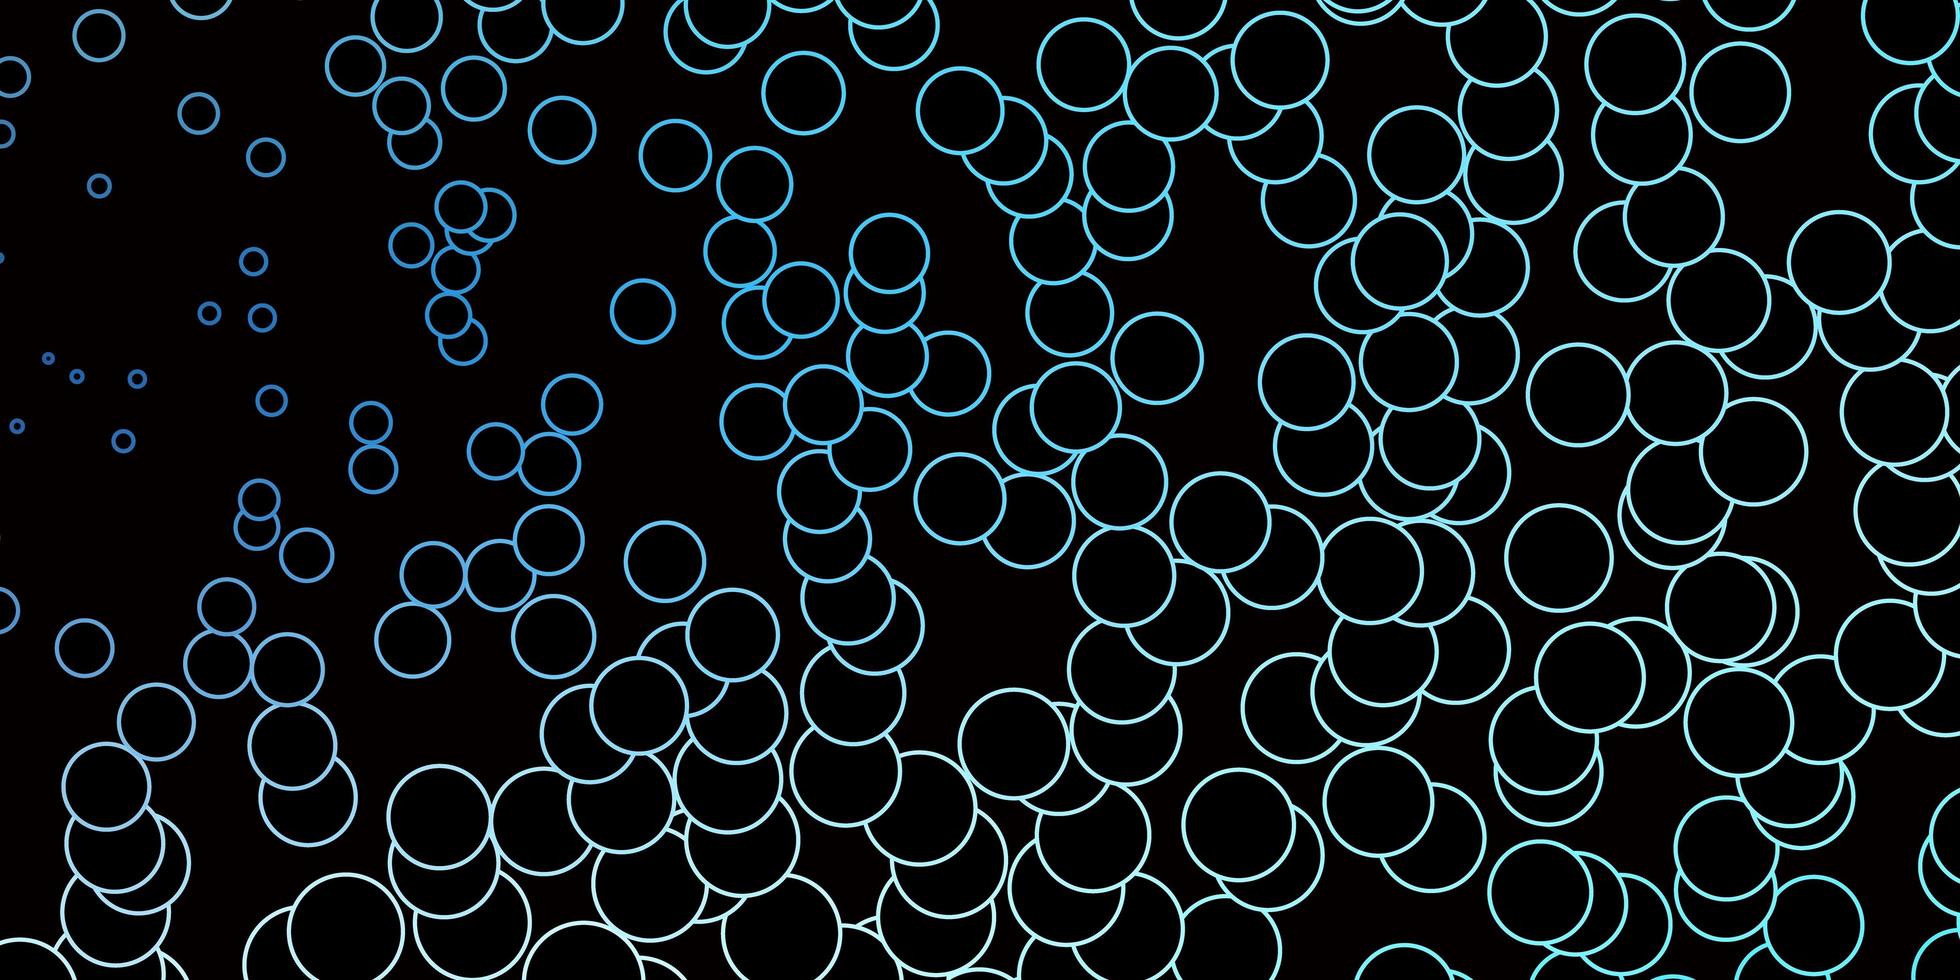 pano de fundo vector azul escuro com círculos